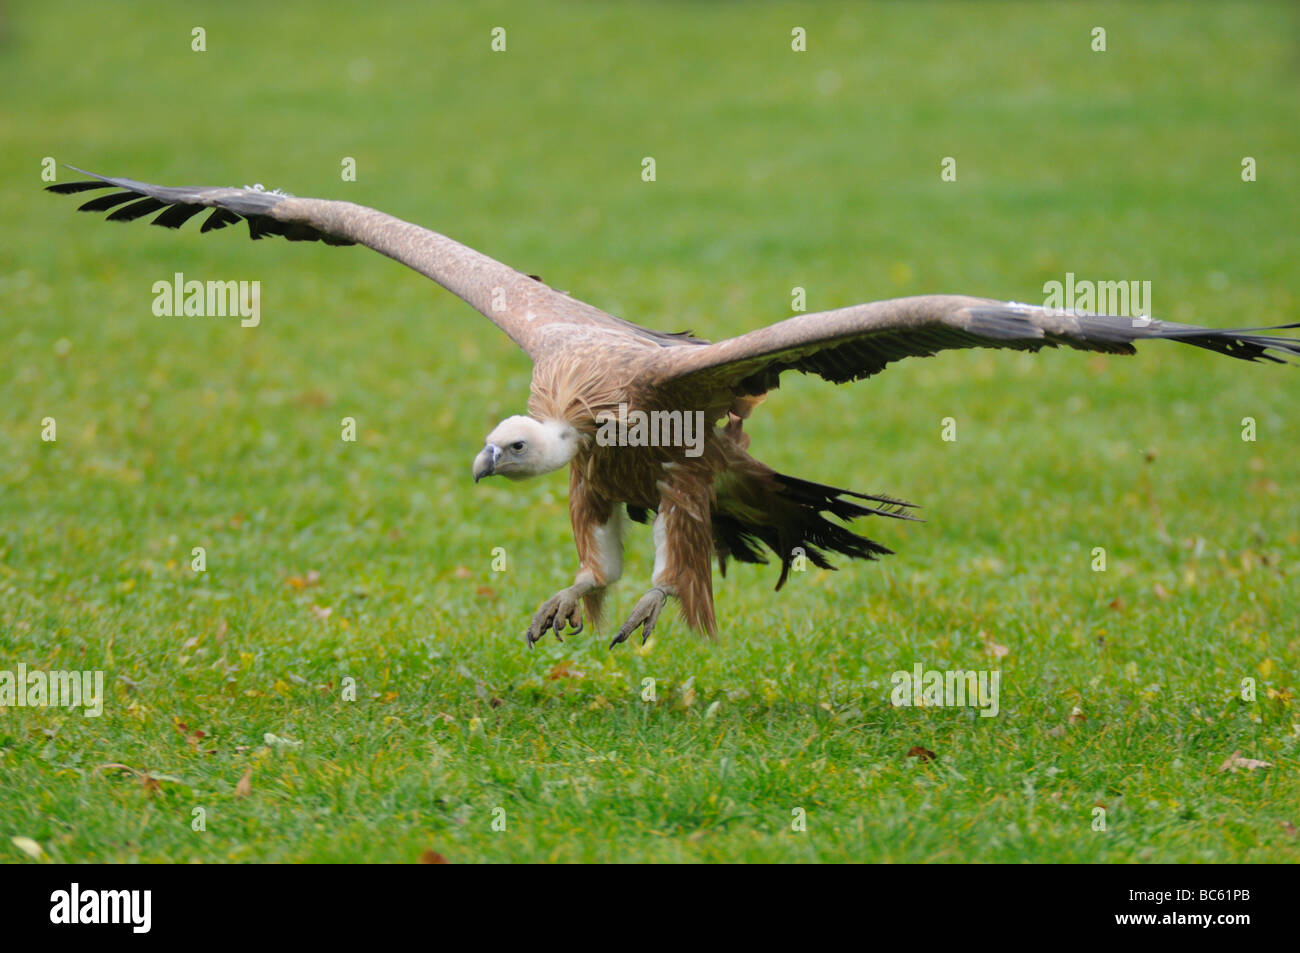 Griffon vulture (Gyps fulvus) in flight Stock Photo